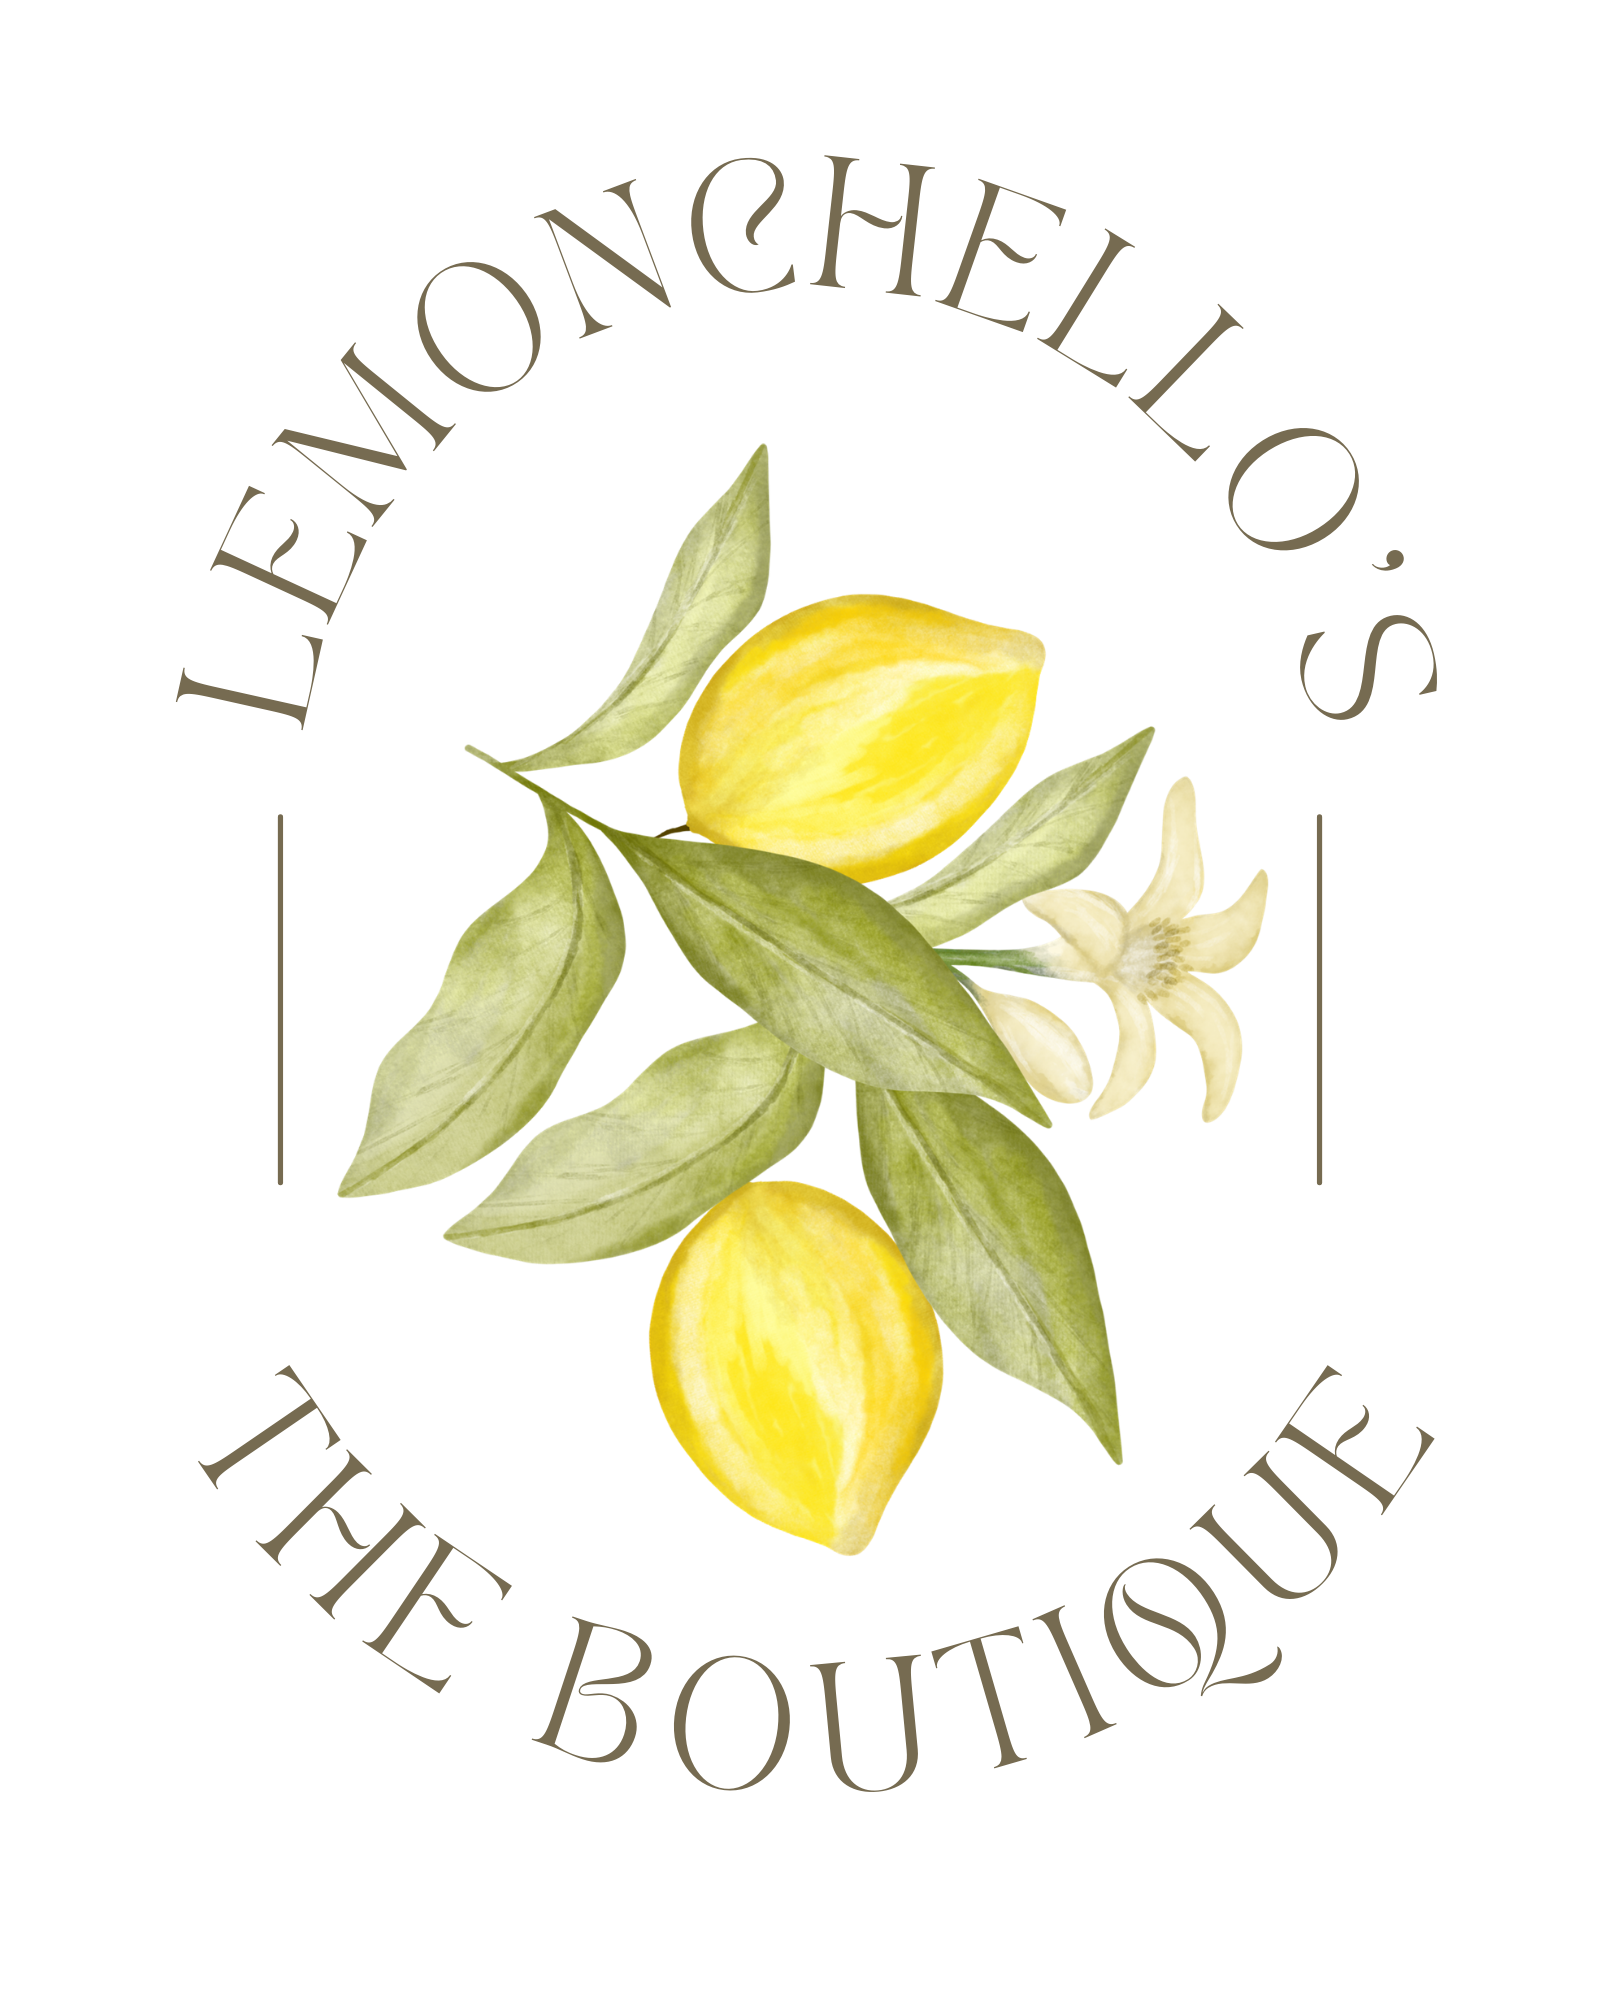 Lemonchello's Irresistible Boutique 